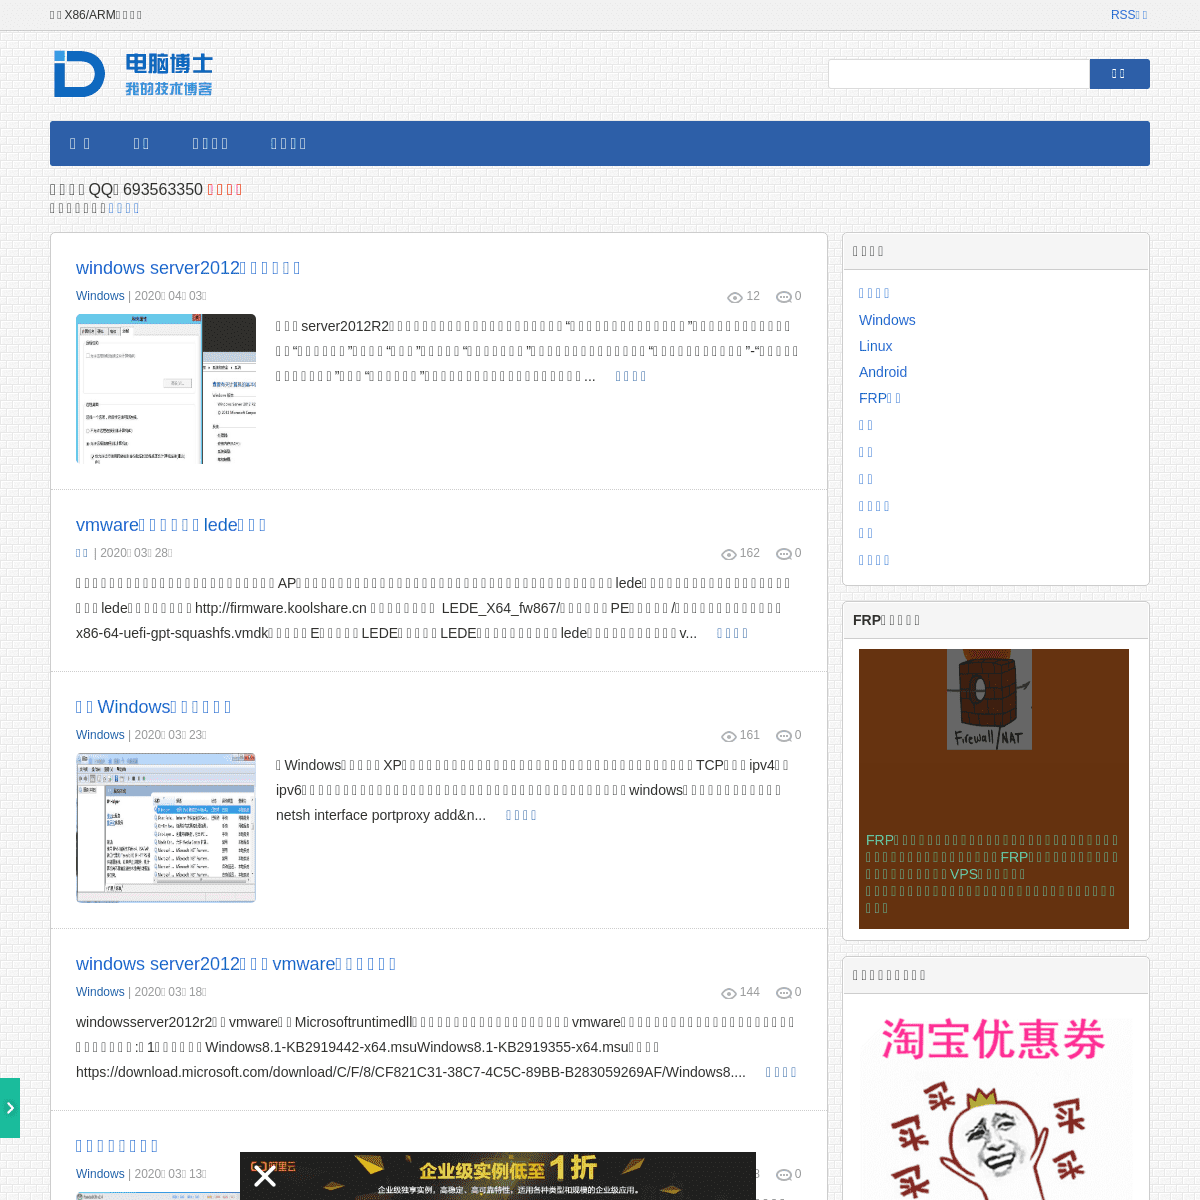 A complete backup of diannaobos.com